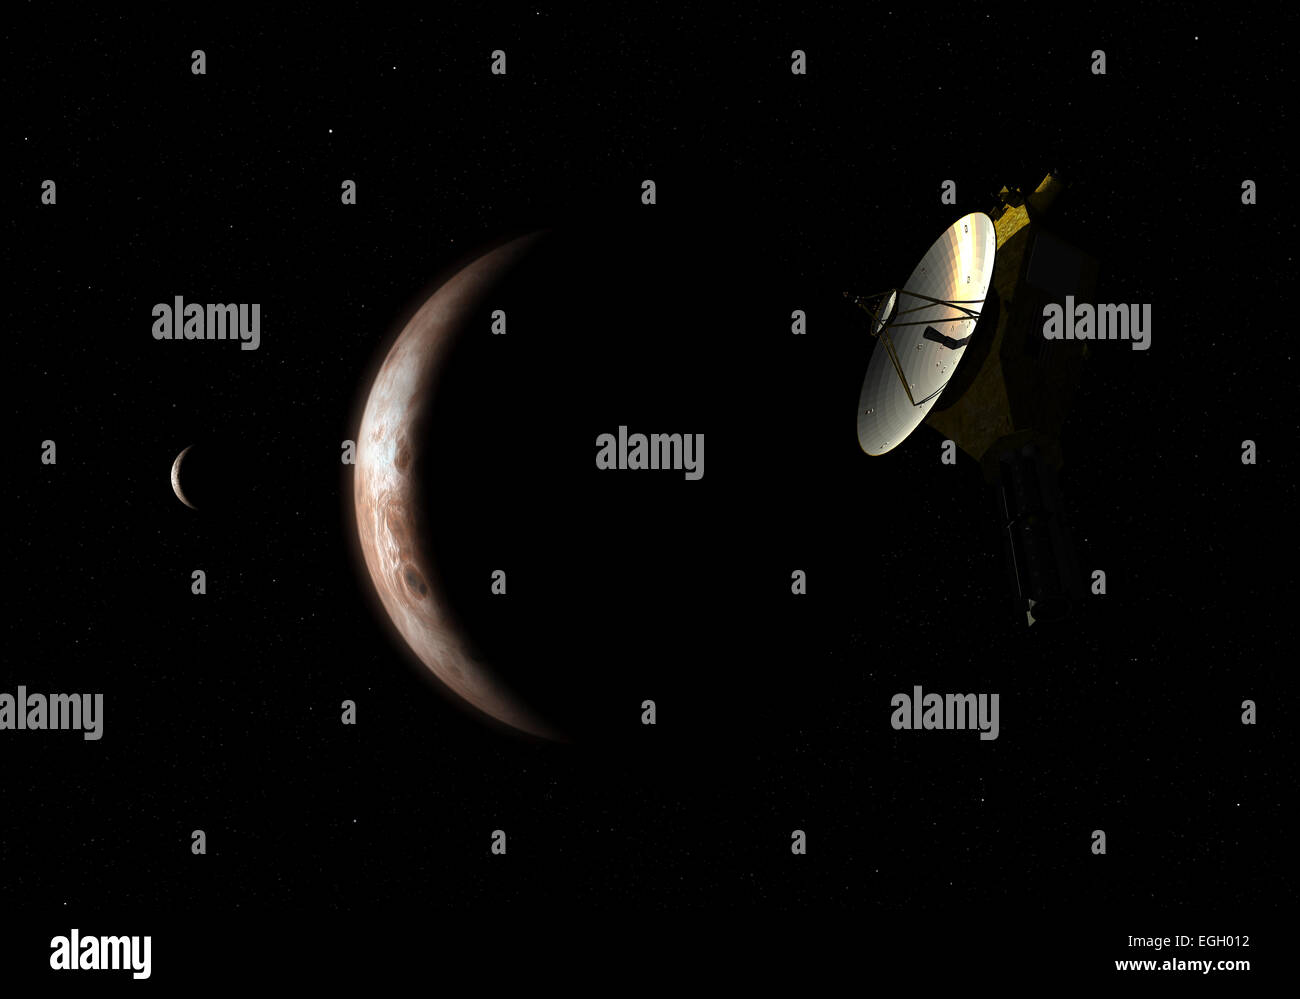 Neue Horizonte unbemannte Raumsonde der NASA fliegt in den Schatten der Zwergplanet Pluto und seinem Mond Charon. Neue Horizonte wurde e Stockfoto